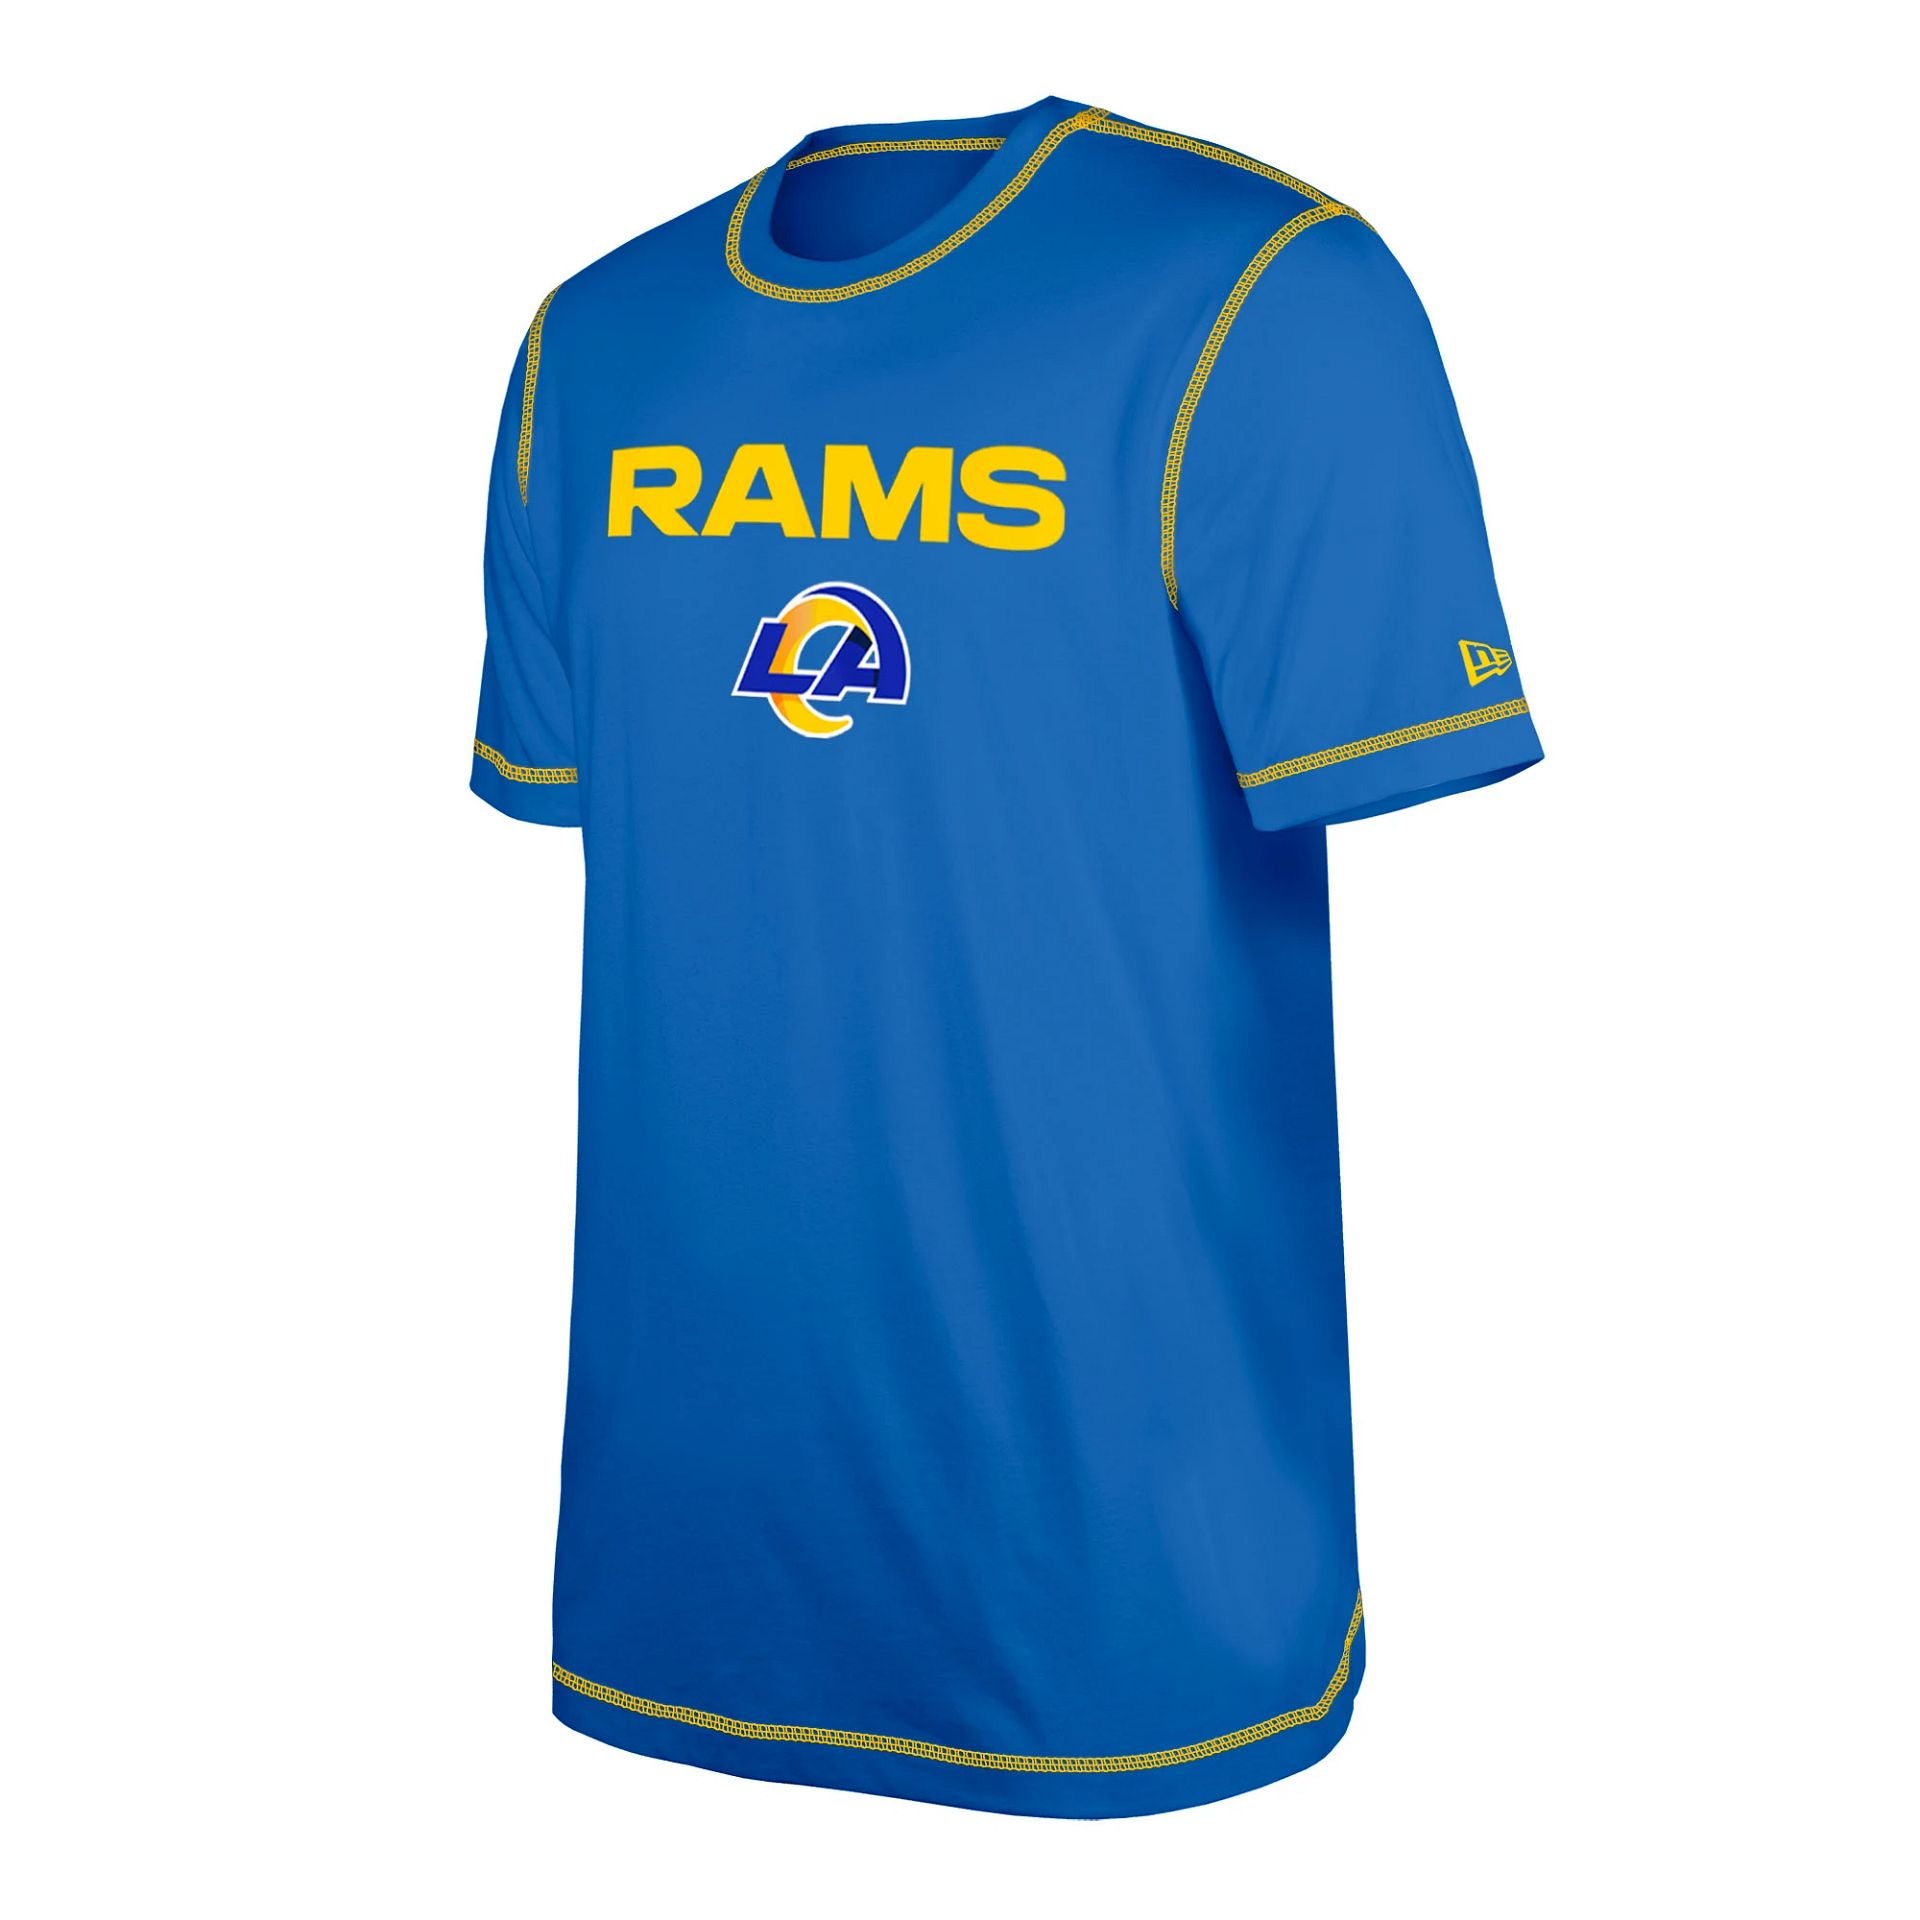 Rams official team shirt